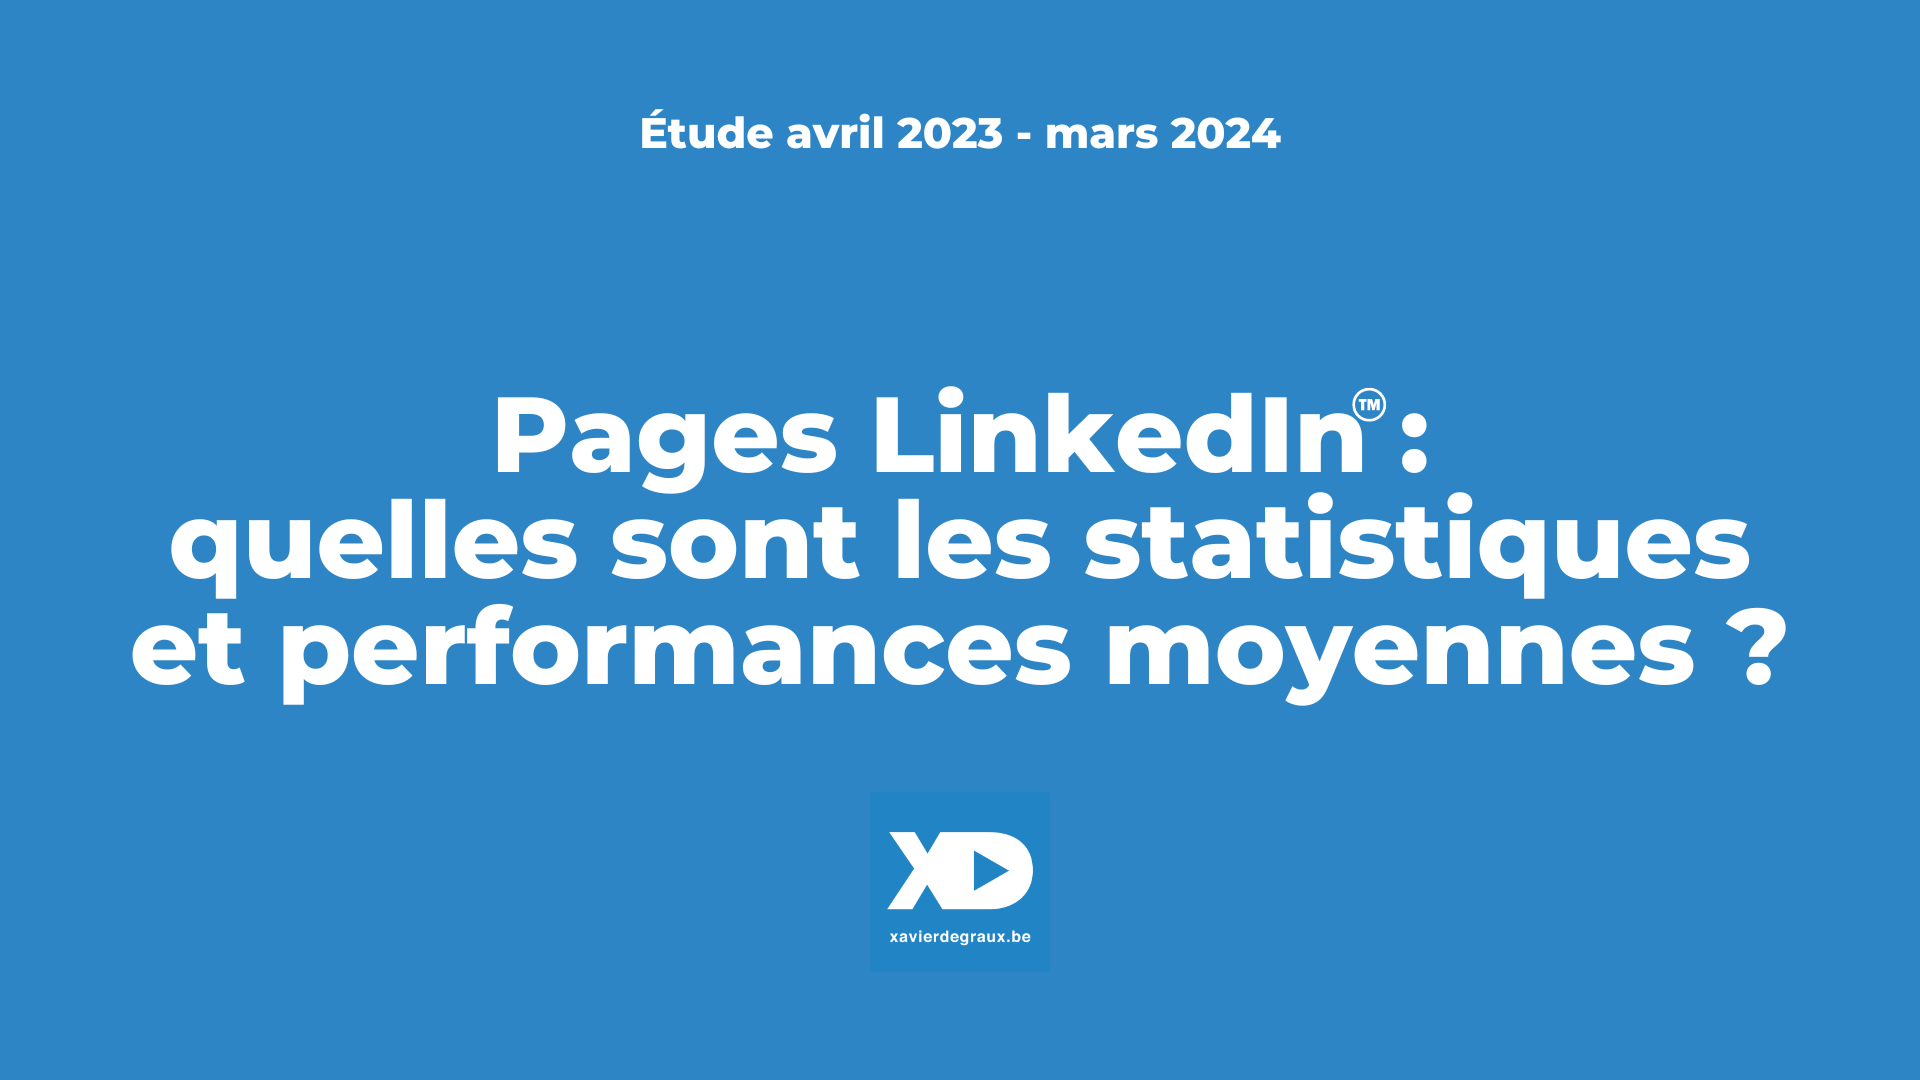 Pages LinkedIn: quelles sont les statistiques et performances moyennes? (étude mars 2024)